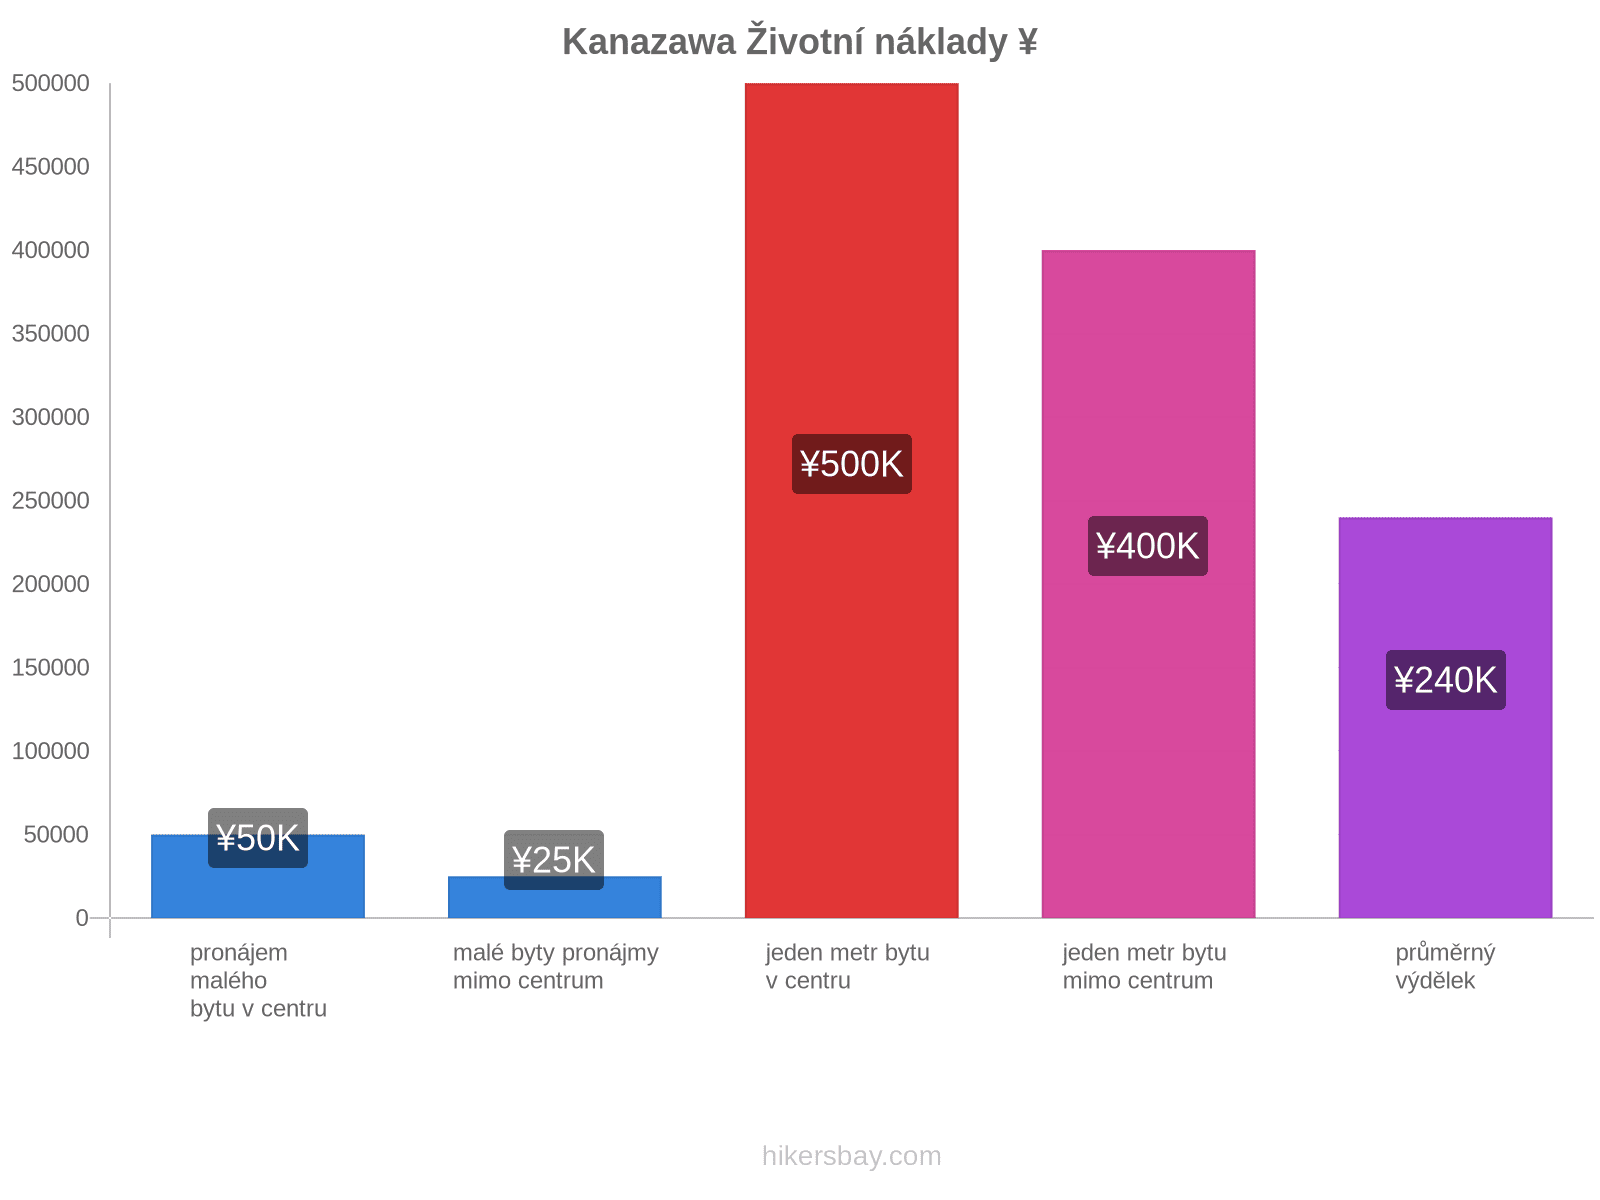 Kanazawa životní náklady hikersbay.com